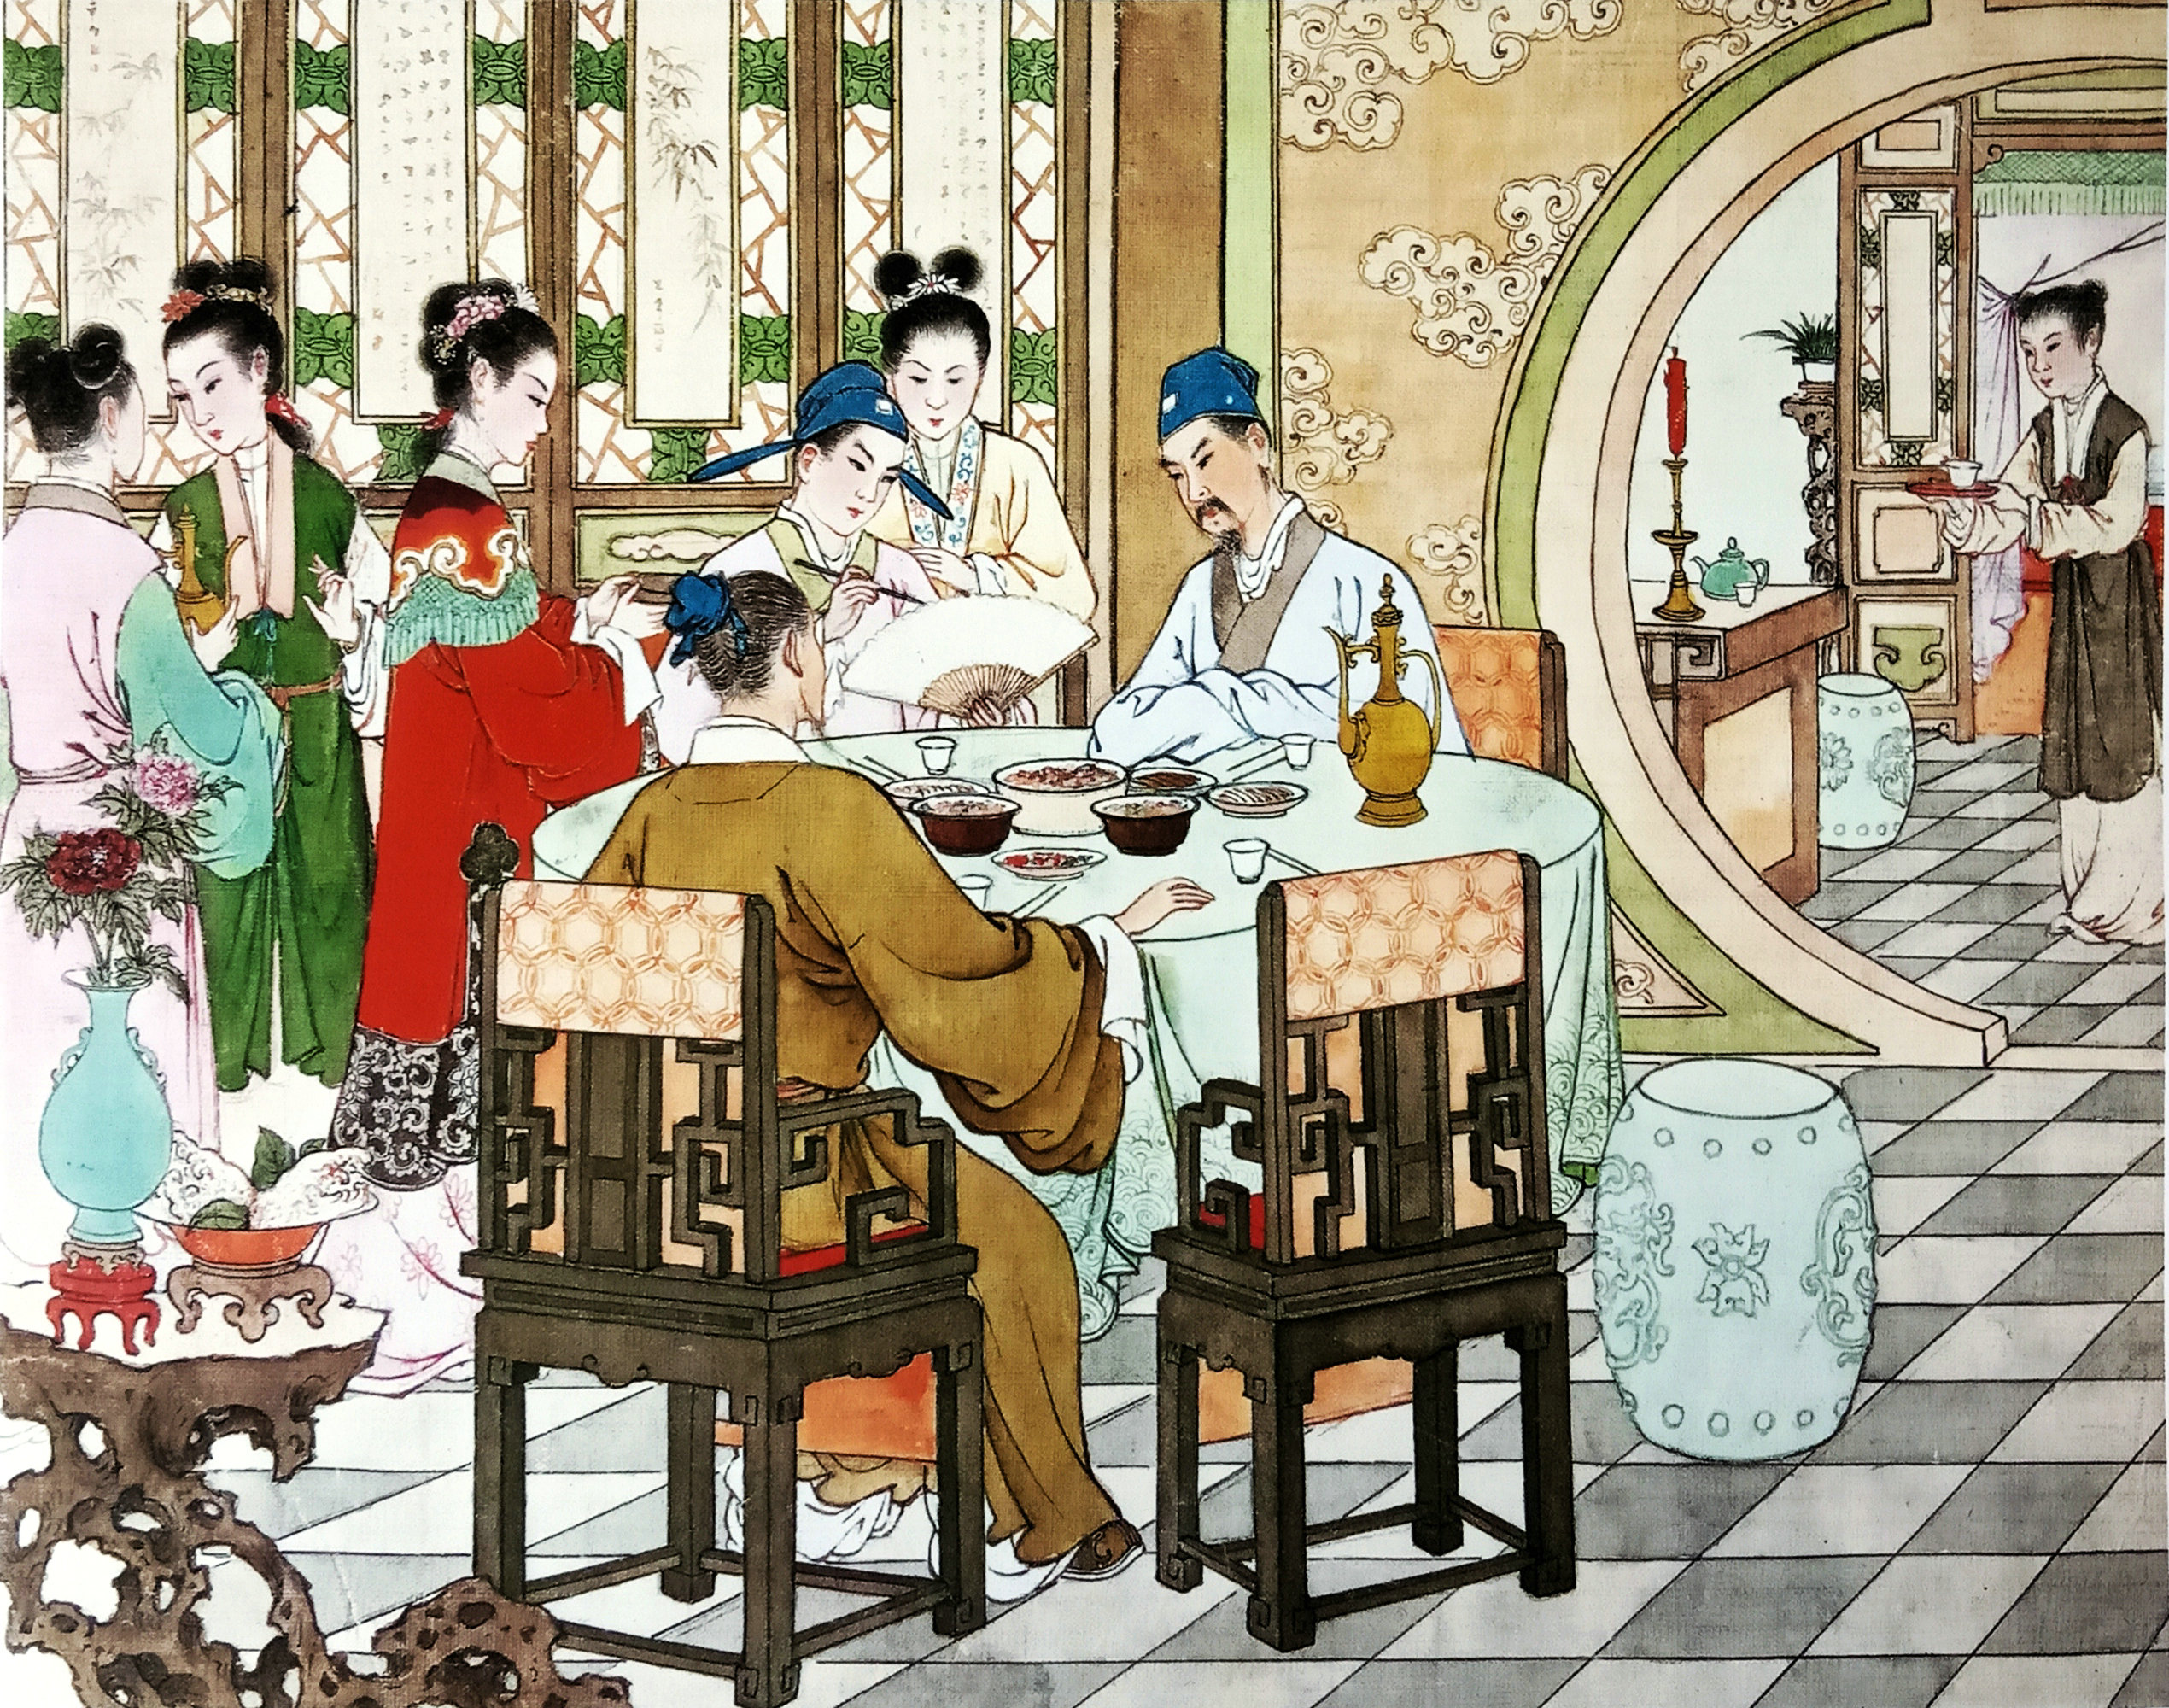 中国现代连环画家任率英的桃花扇图画